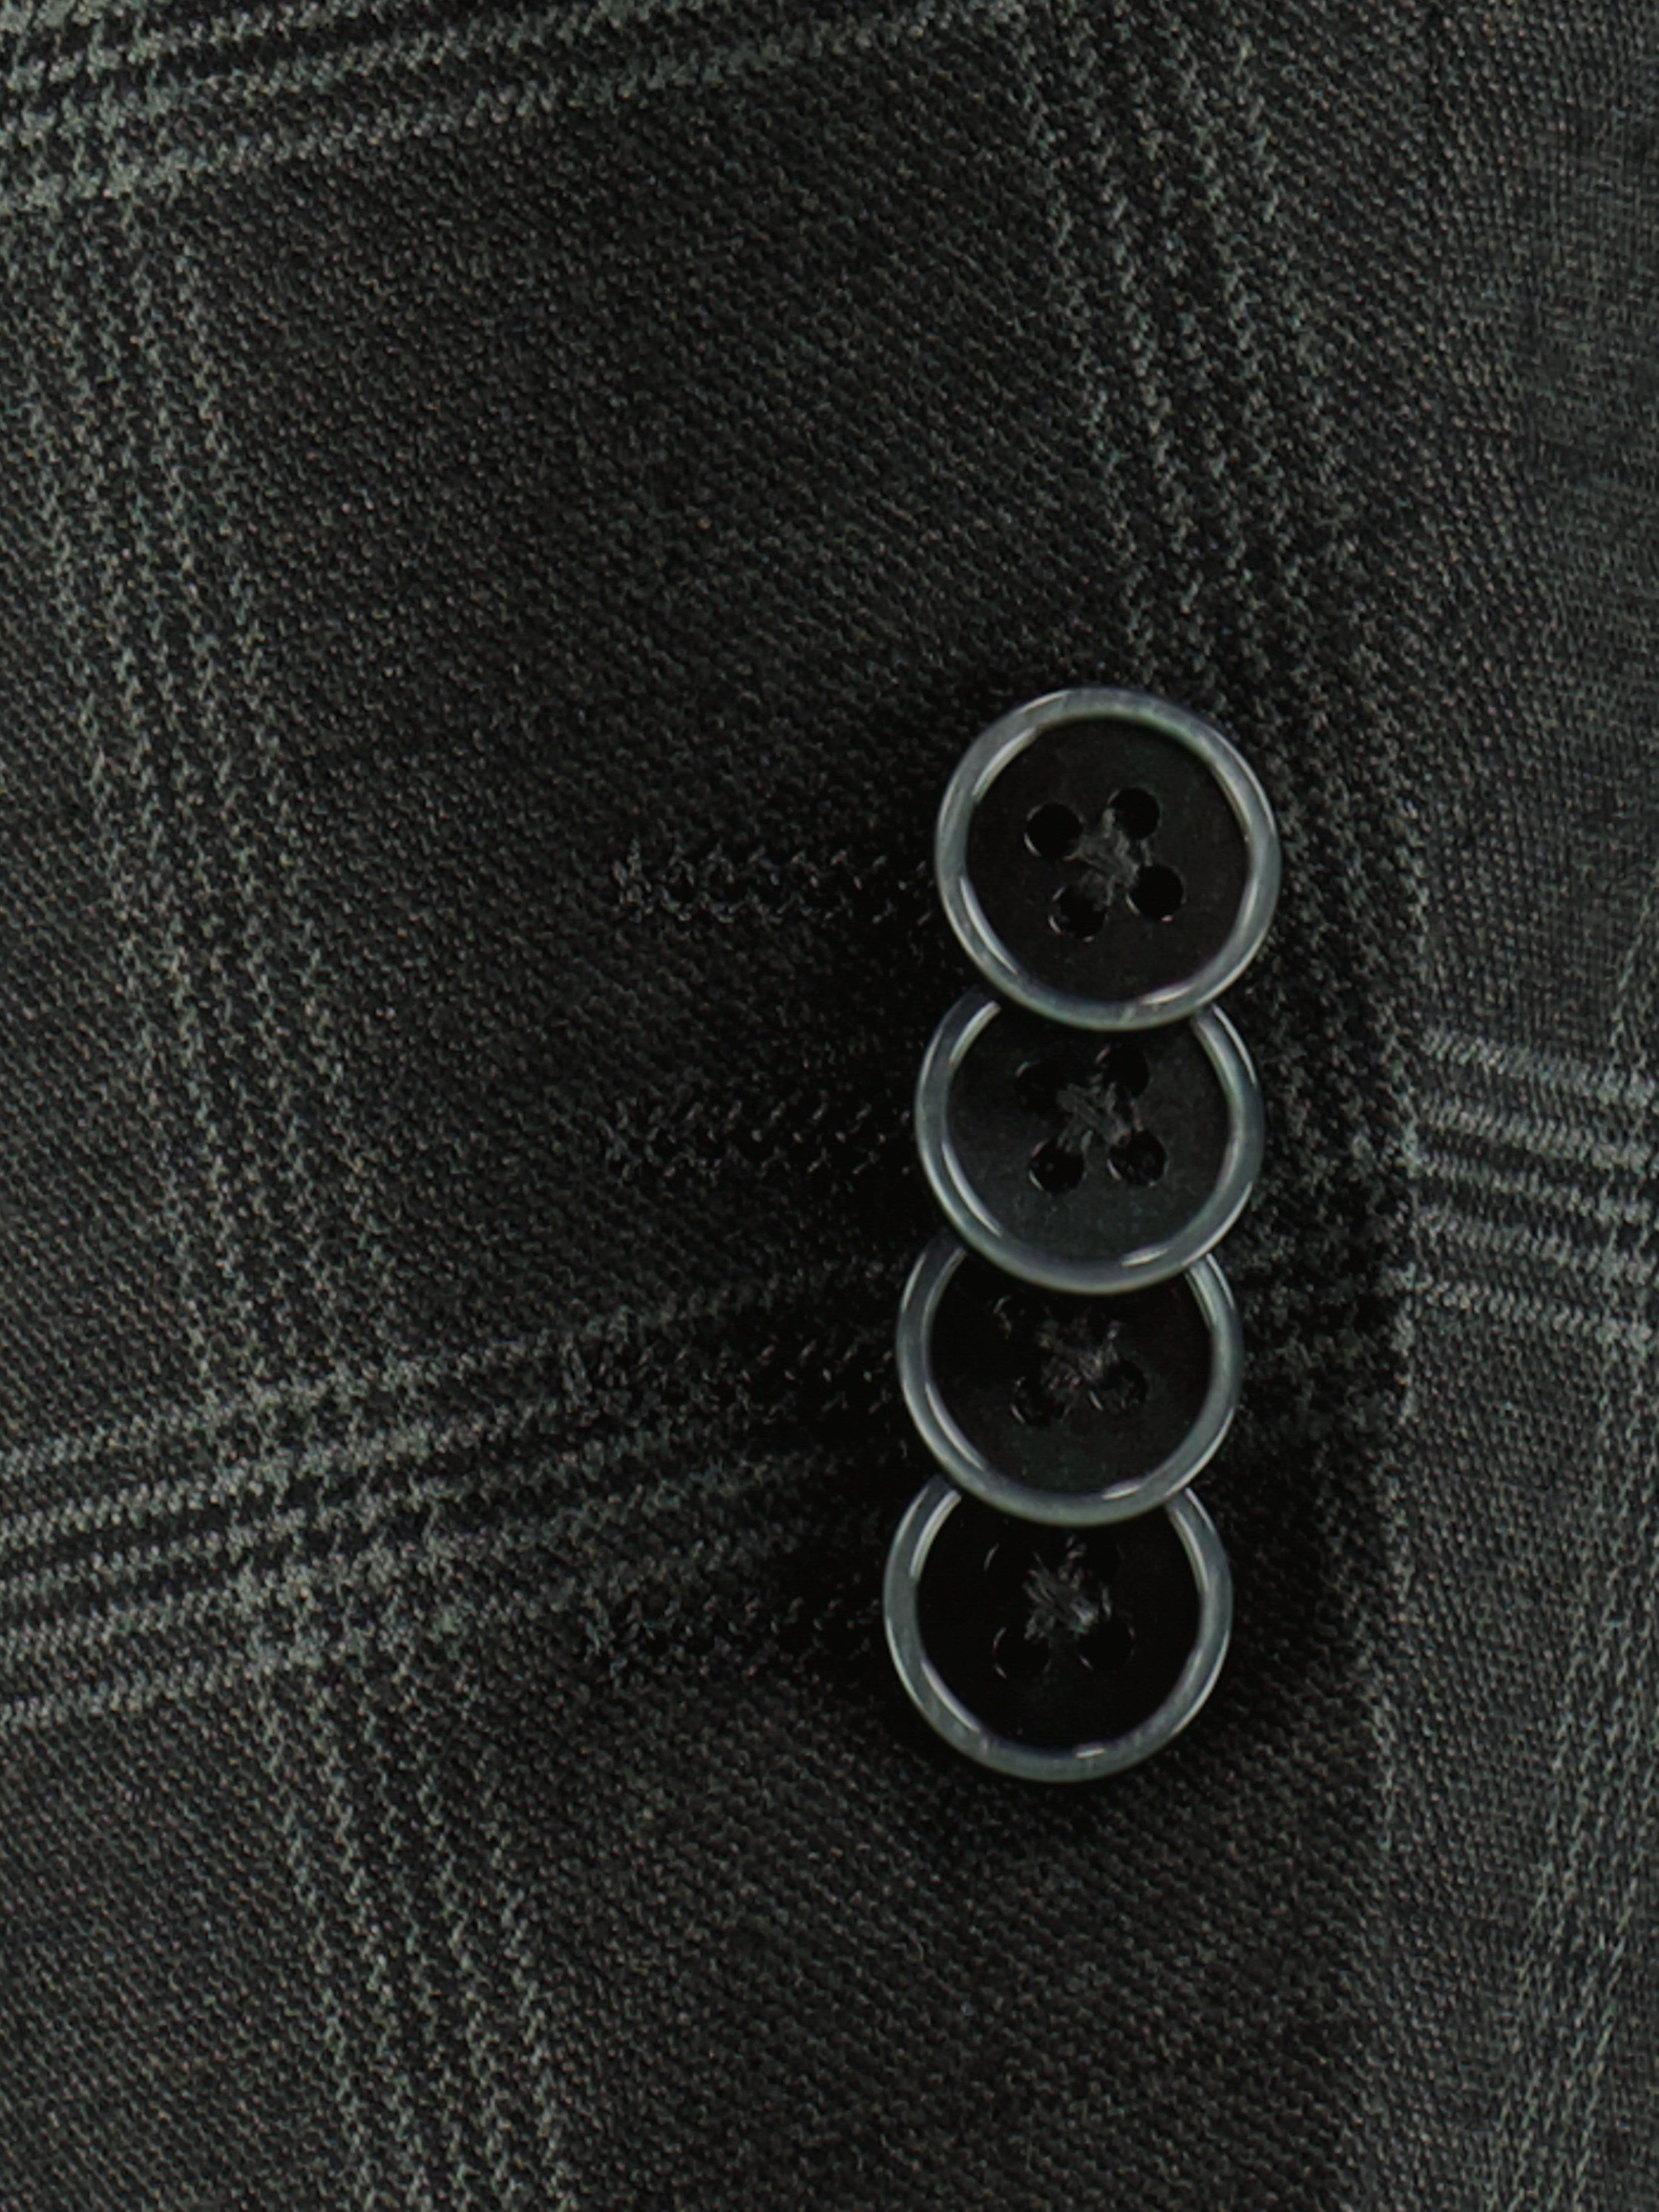 Scotland Blue Kostuum Grijs Toulon Suit Drop 8 213028TO13SB/940 grey